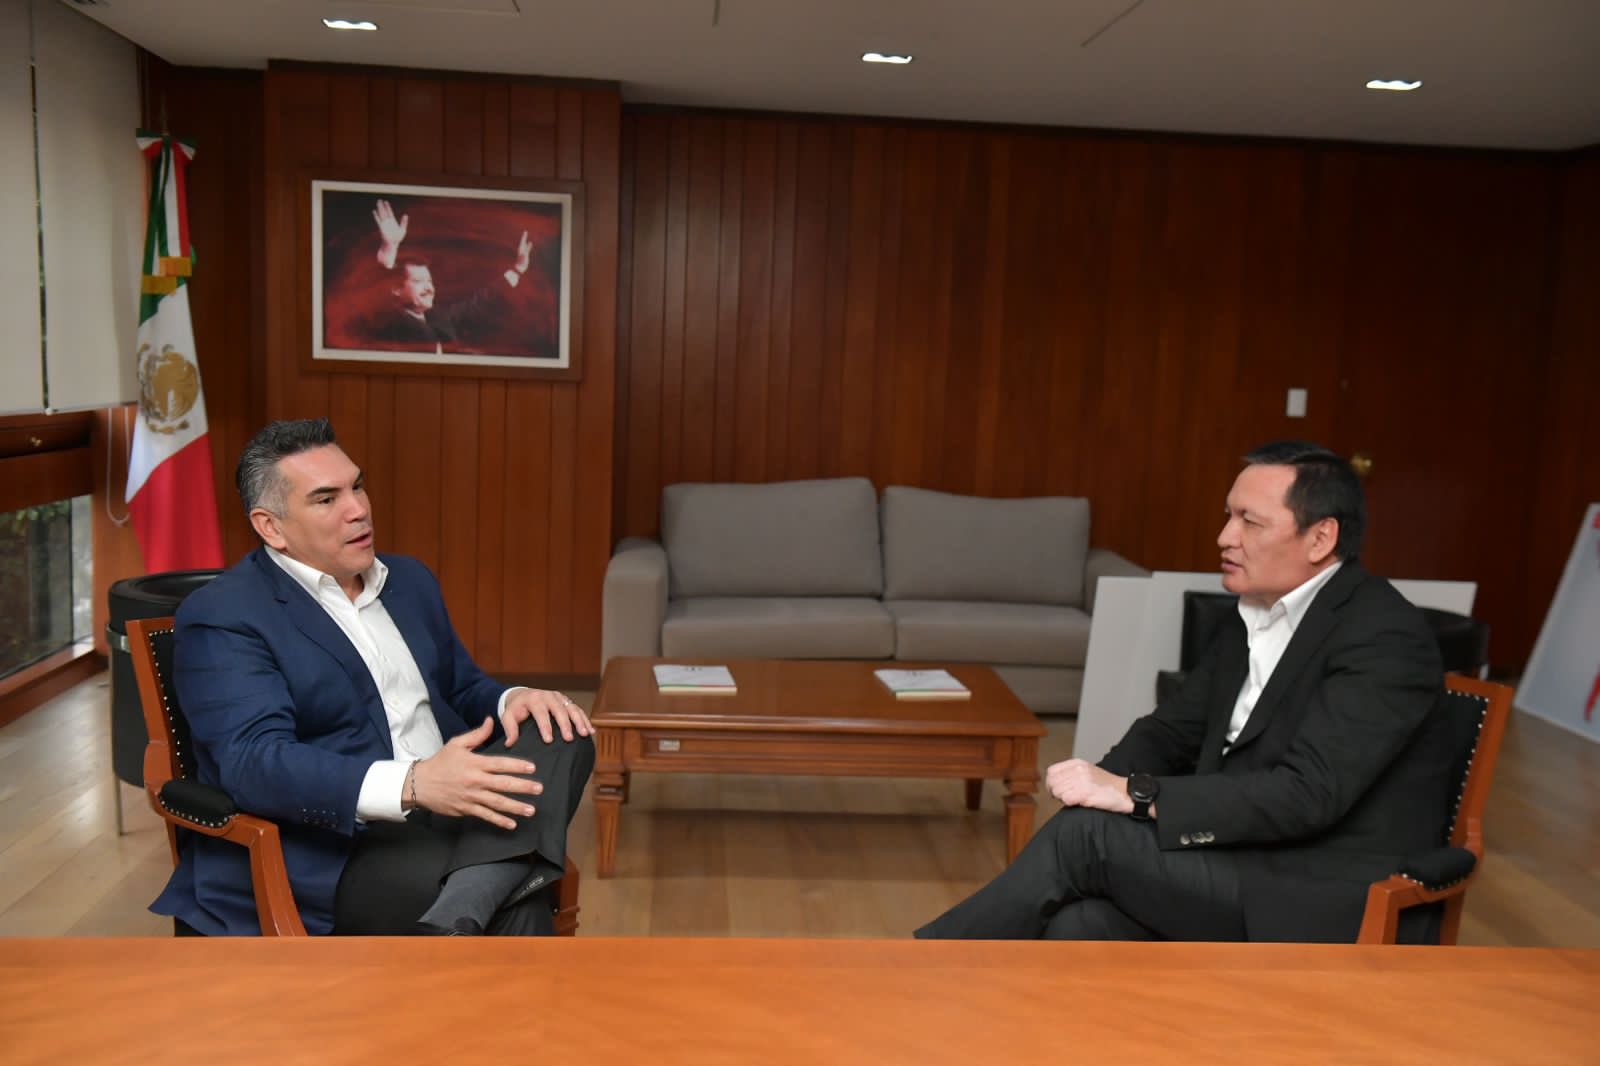 Moreno y Osorio Chong se reunieron tras controversias que los enfrentaron (Twitter/@alitomorenoc)